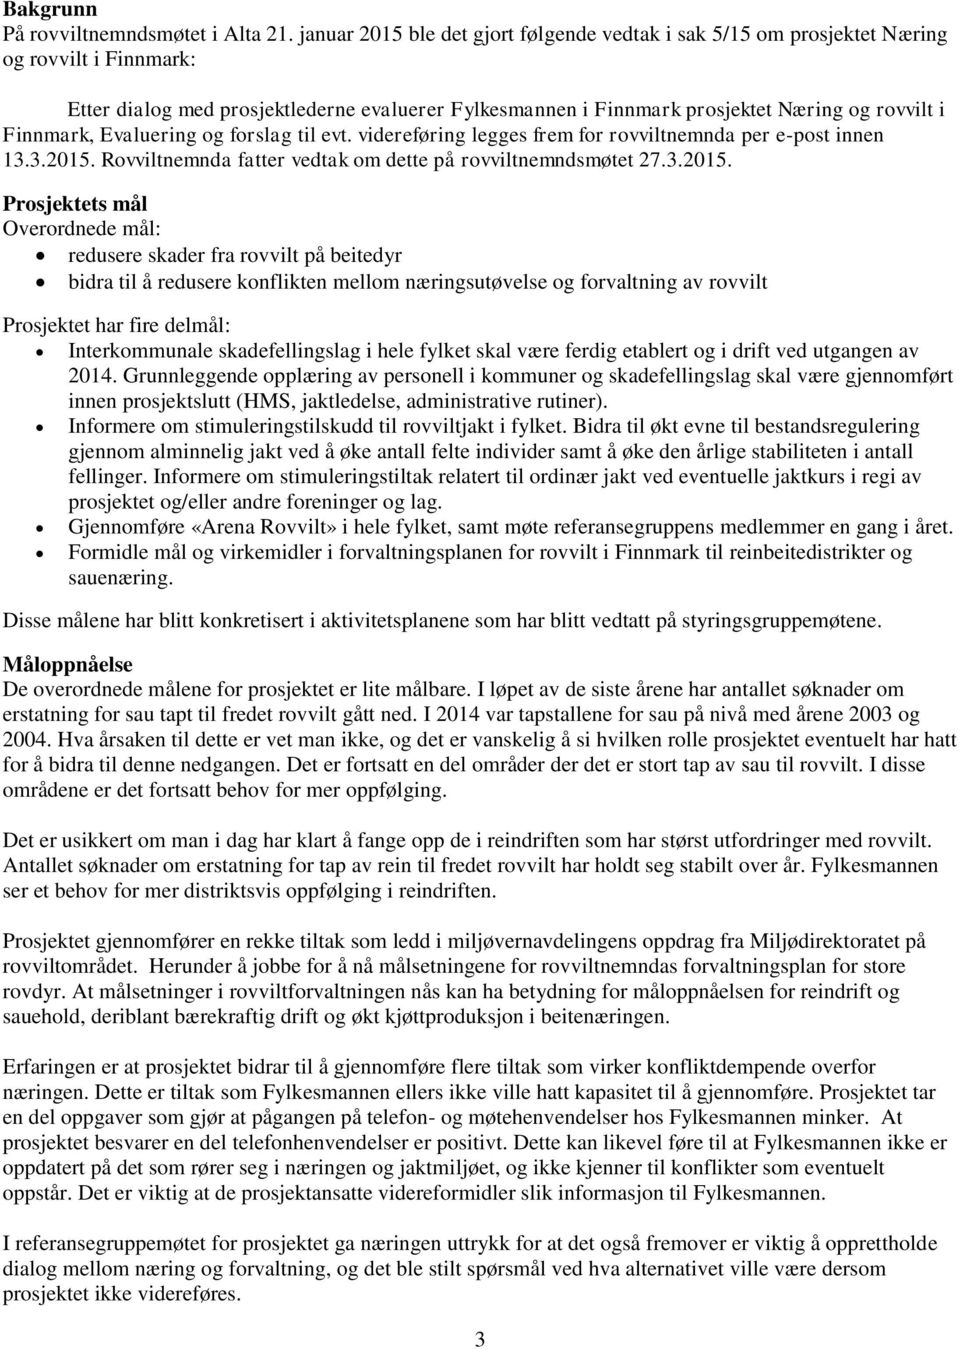 Finnmark, Evaluering og forslag til evt. videreføring legges frem for rovviltnemnda per e-post innen 13.3.2015.